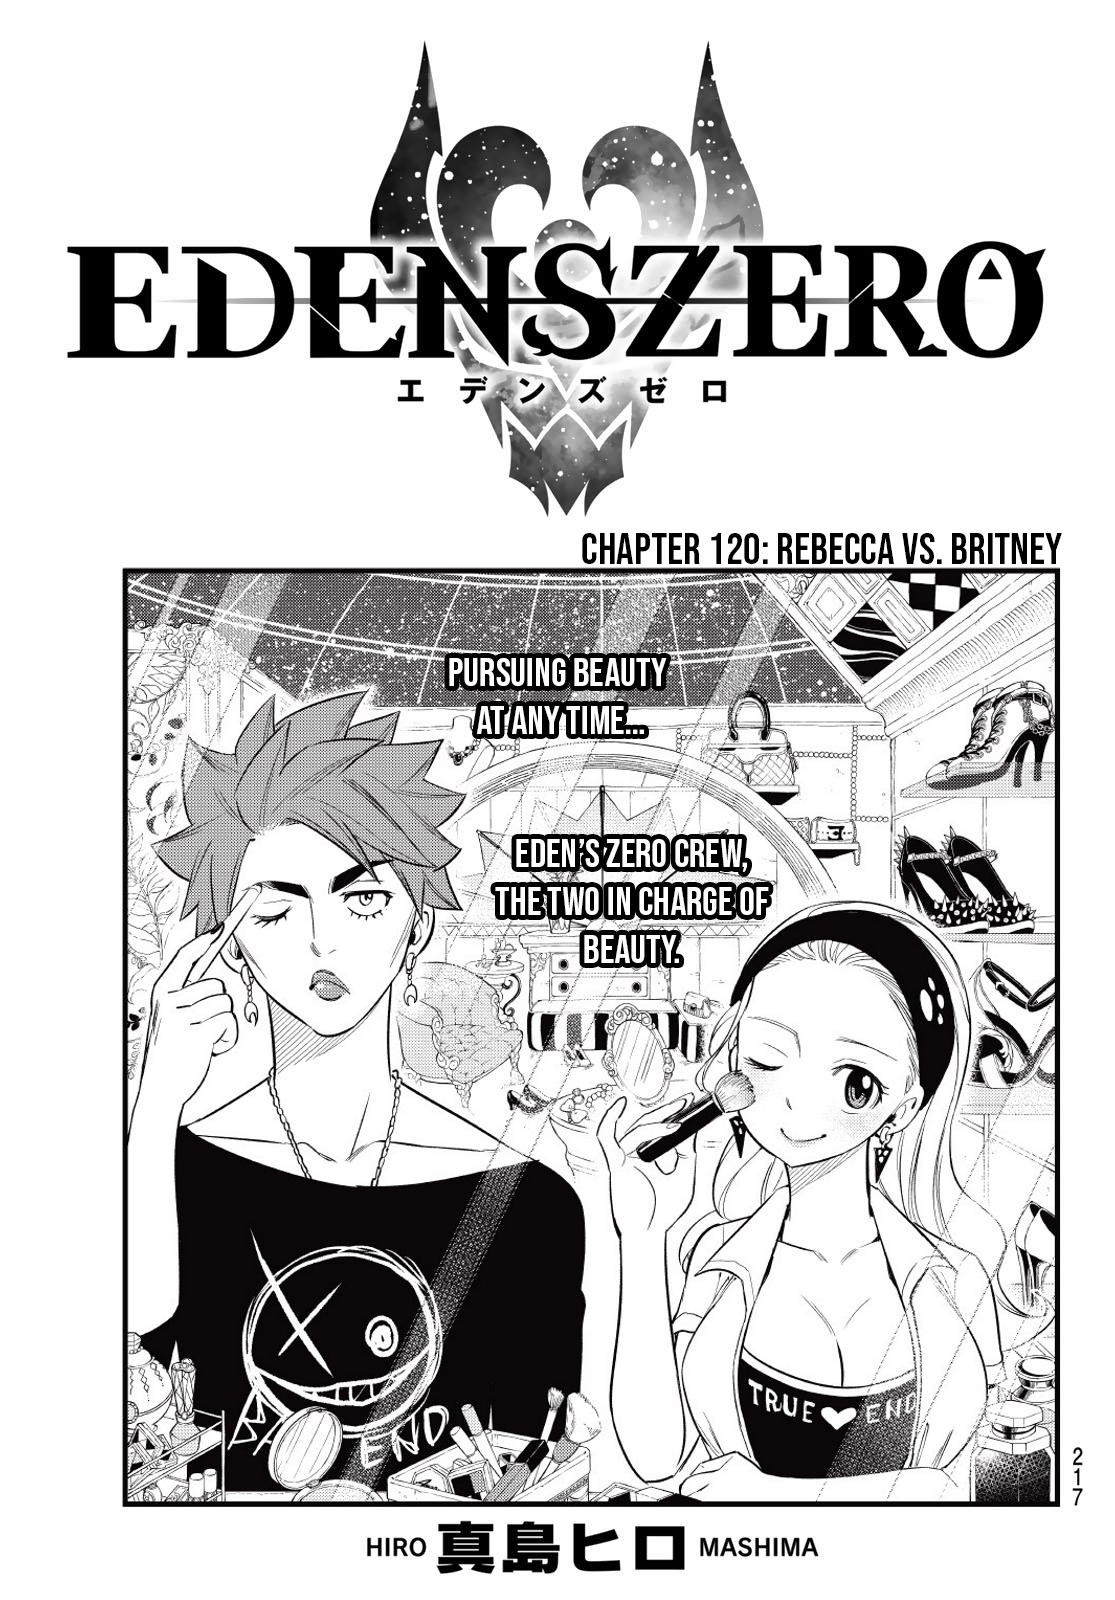 Rebecca - Edens Zero  Eden's zero rebecca, Edens zero, Hiro mashima